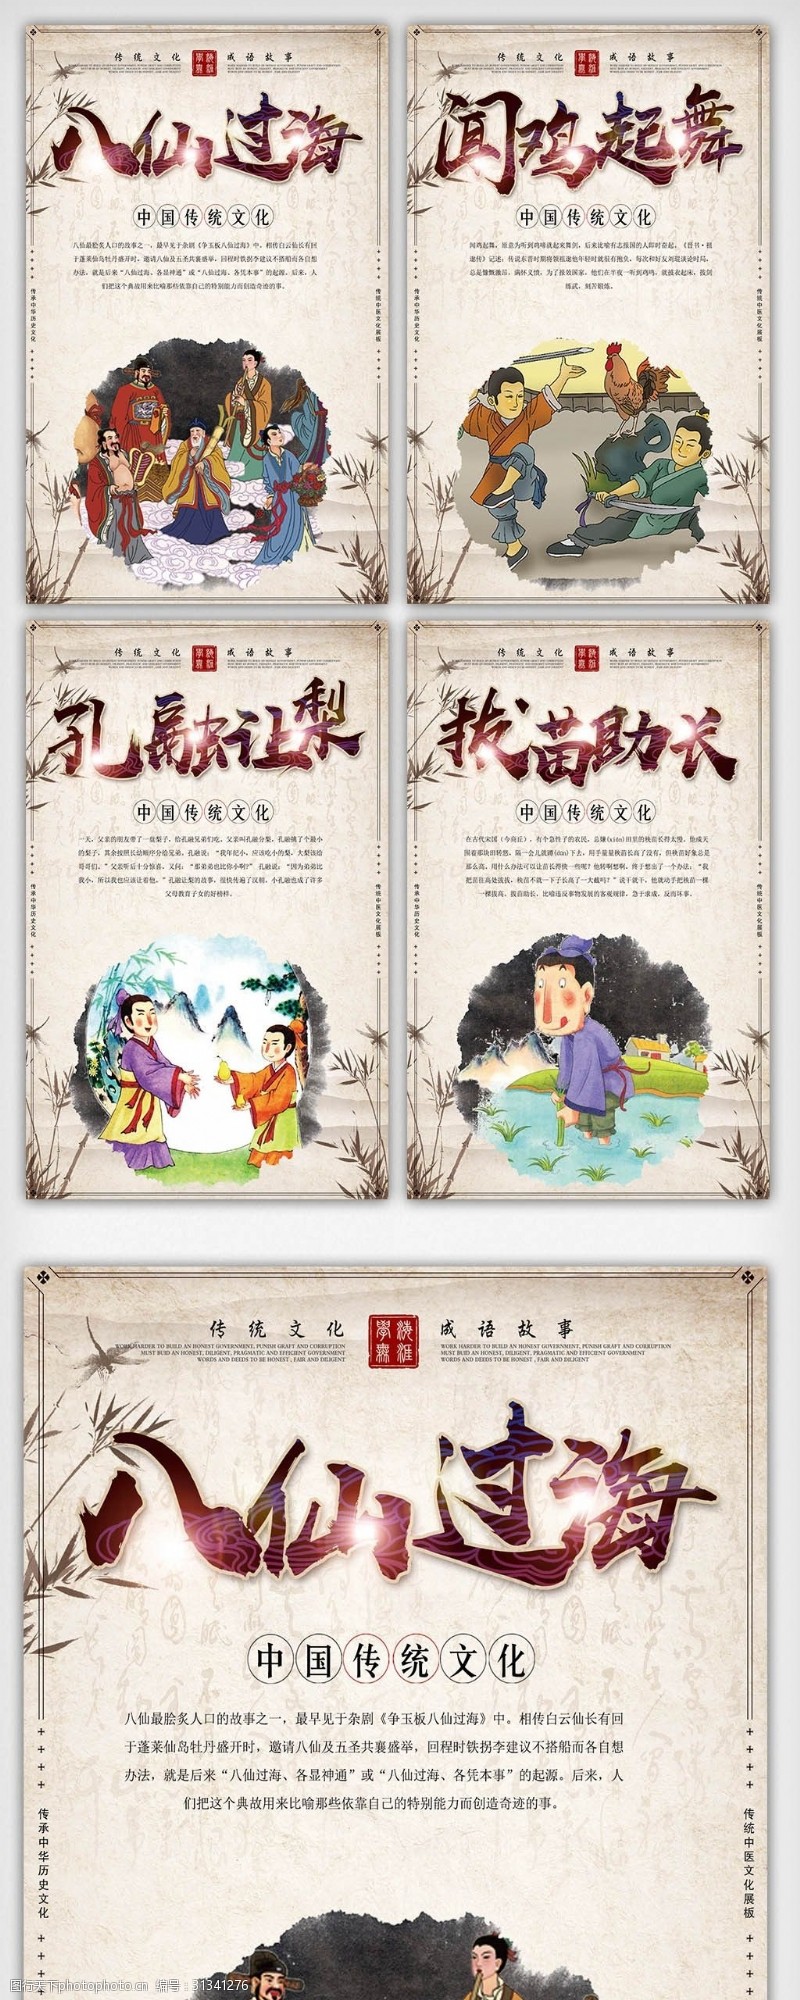 中华成语校园成语文化宣传挂画图